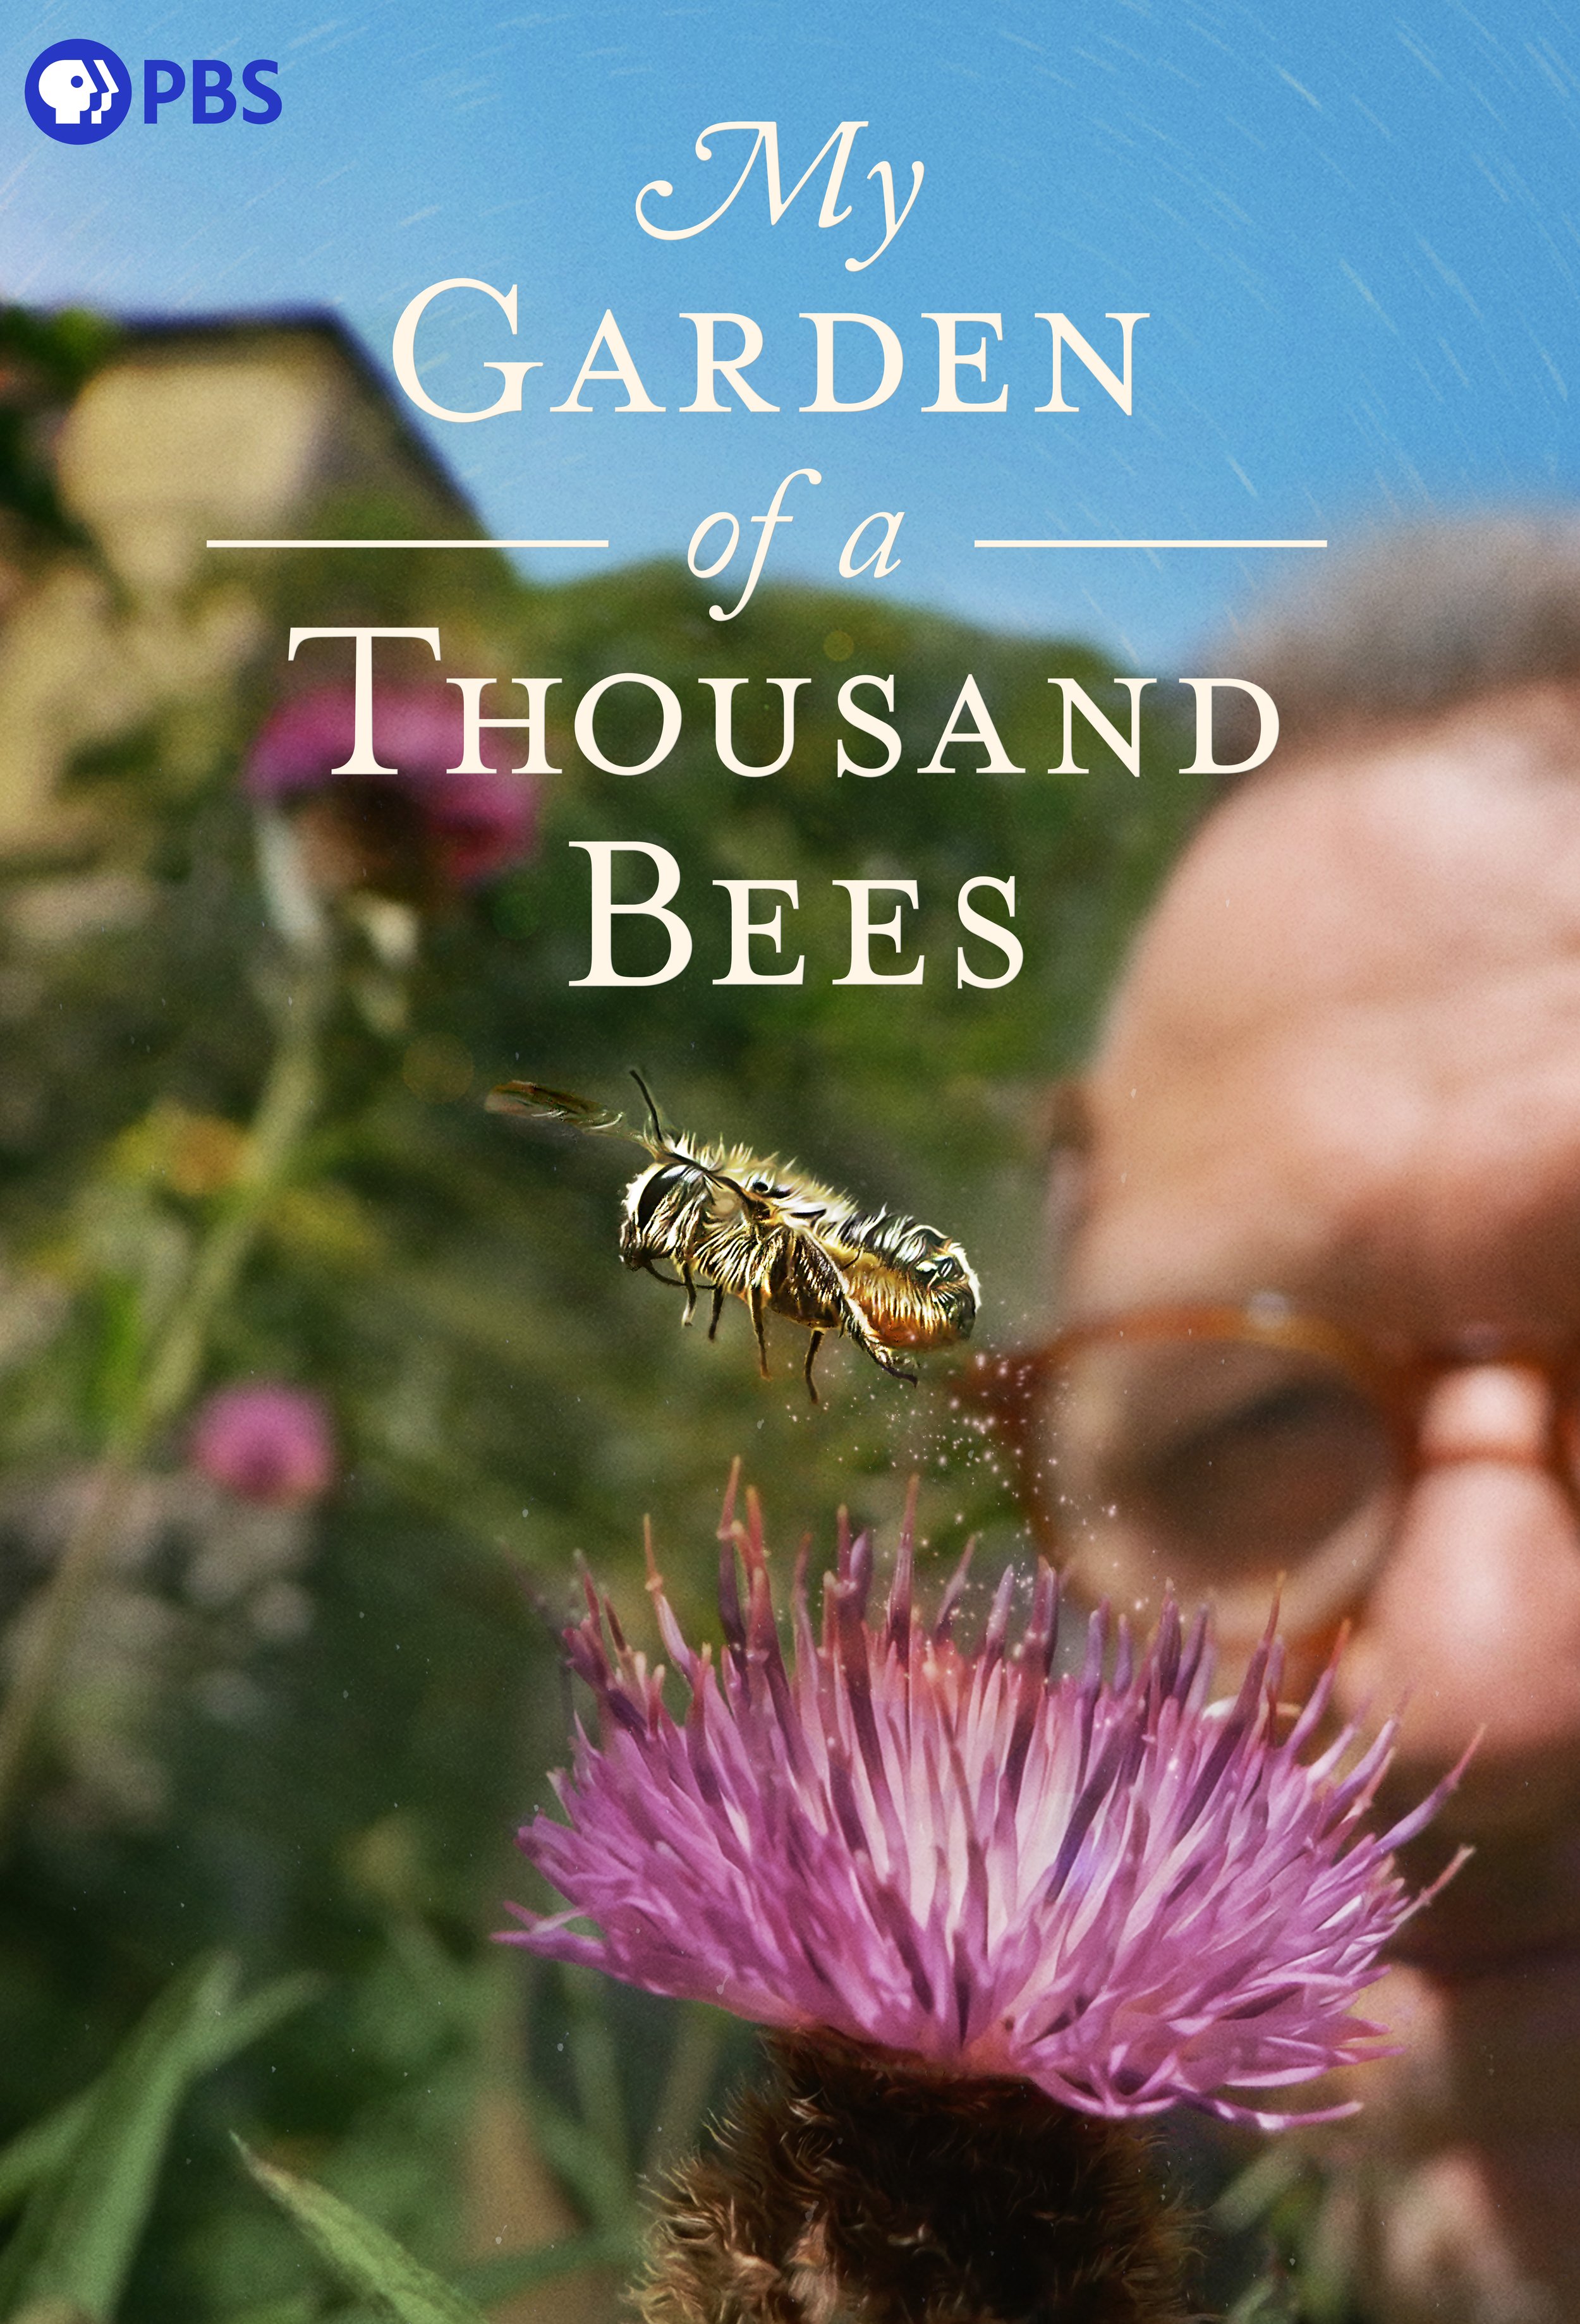 My Garden of 1000 Bees 27x40.jpg